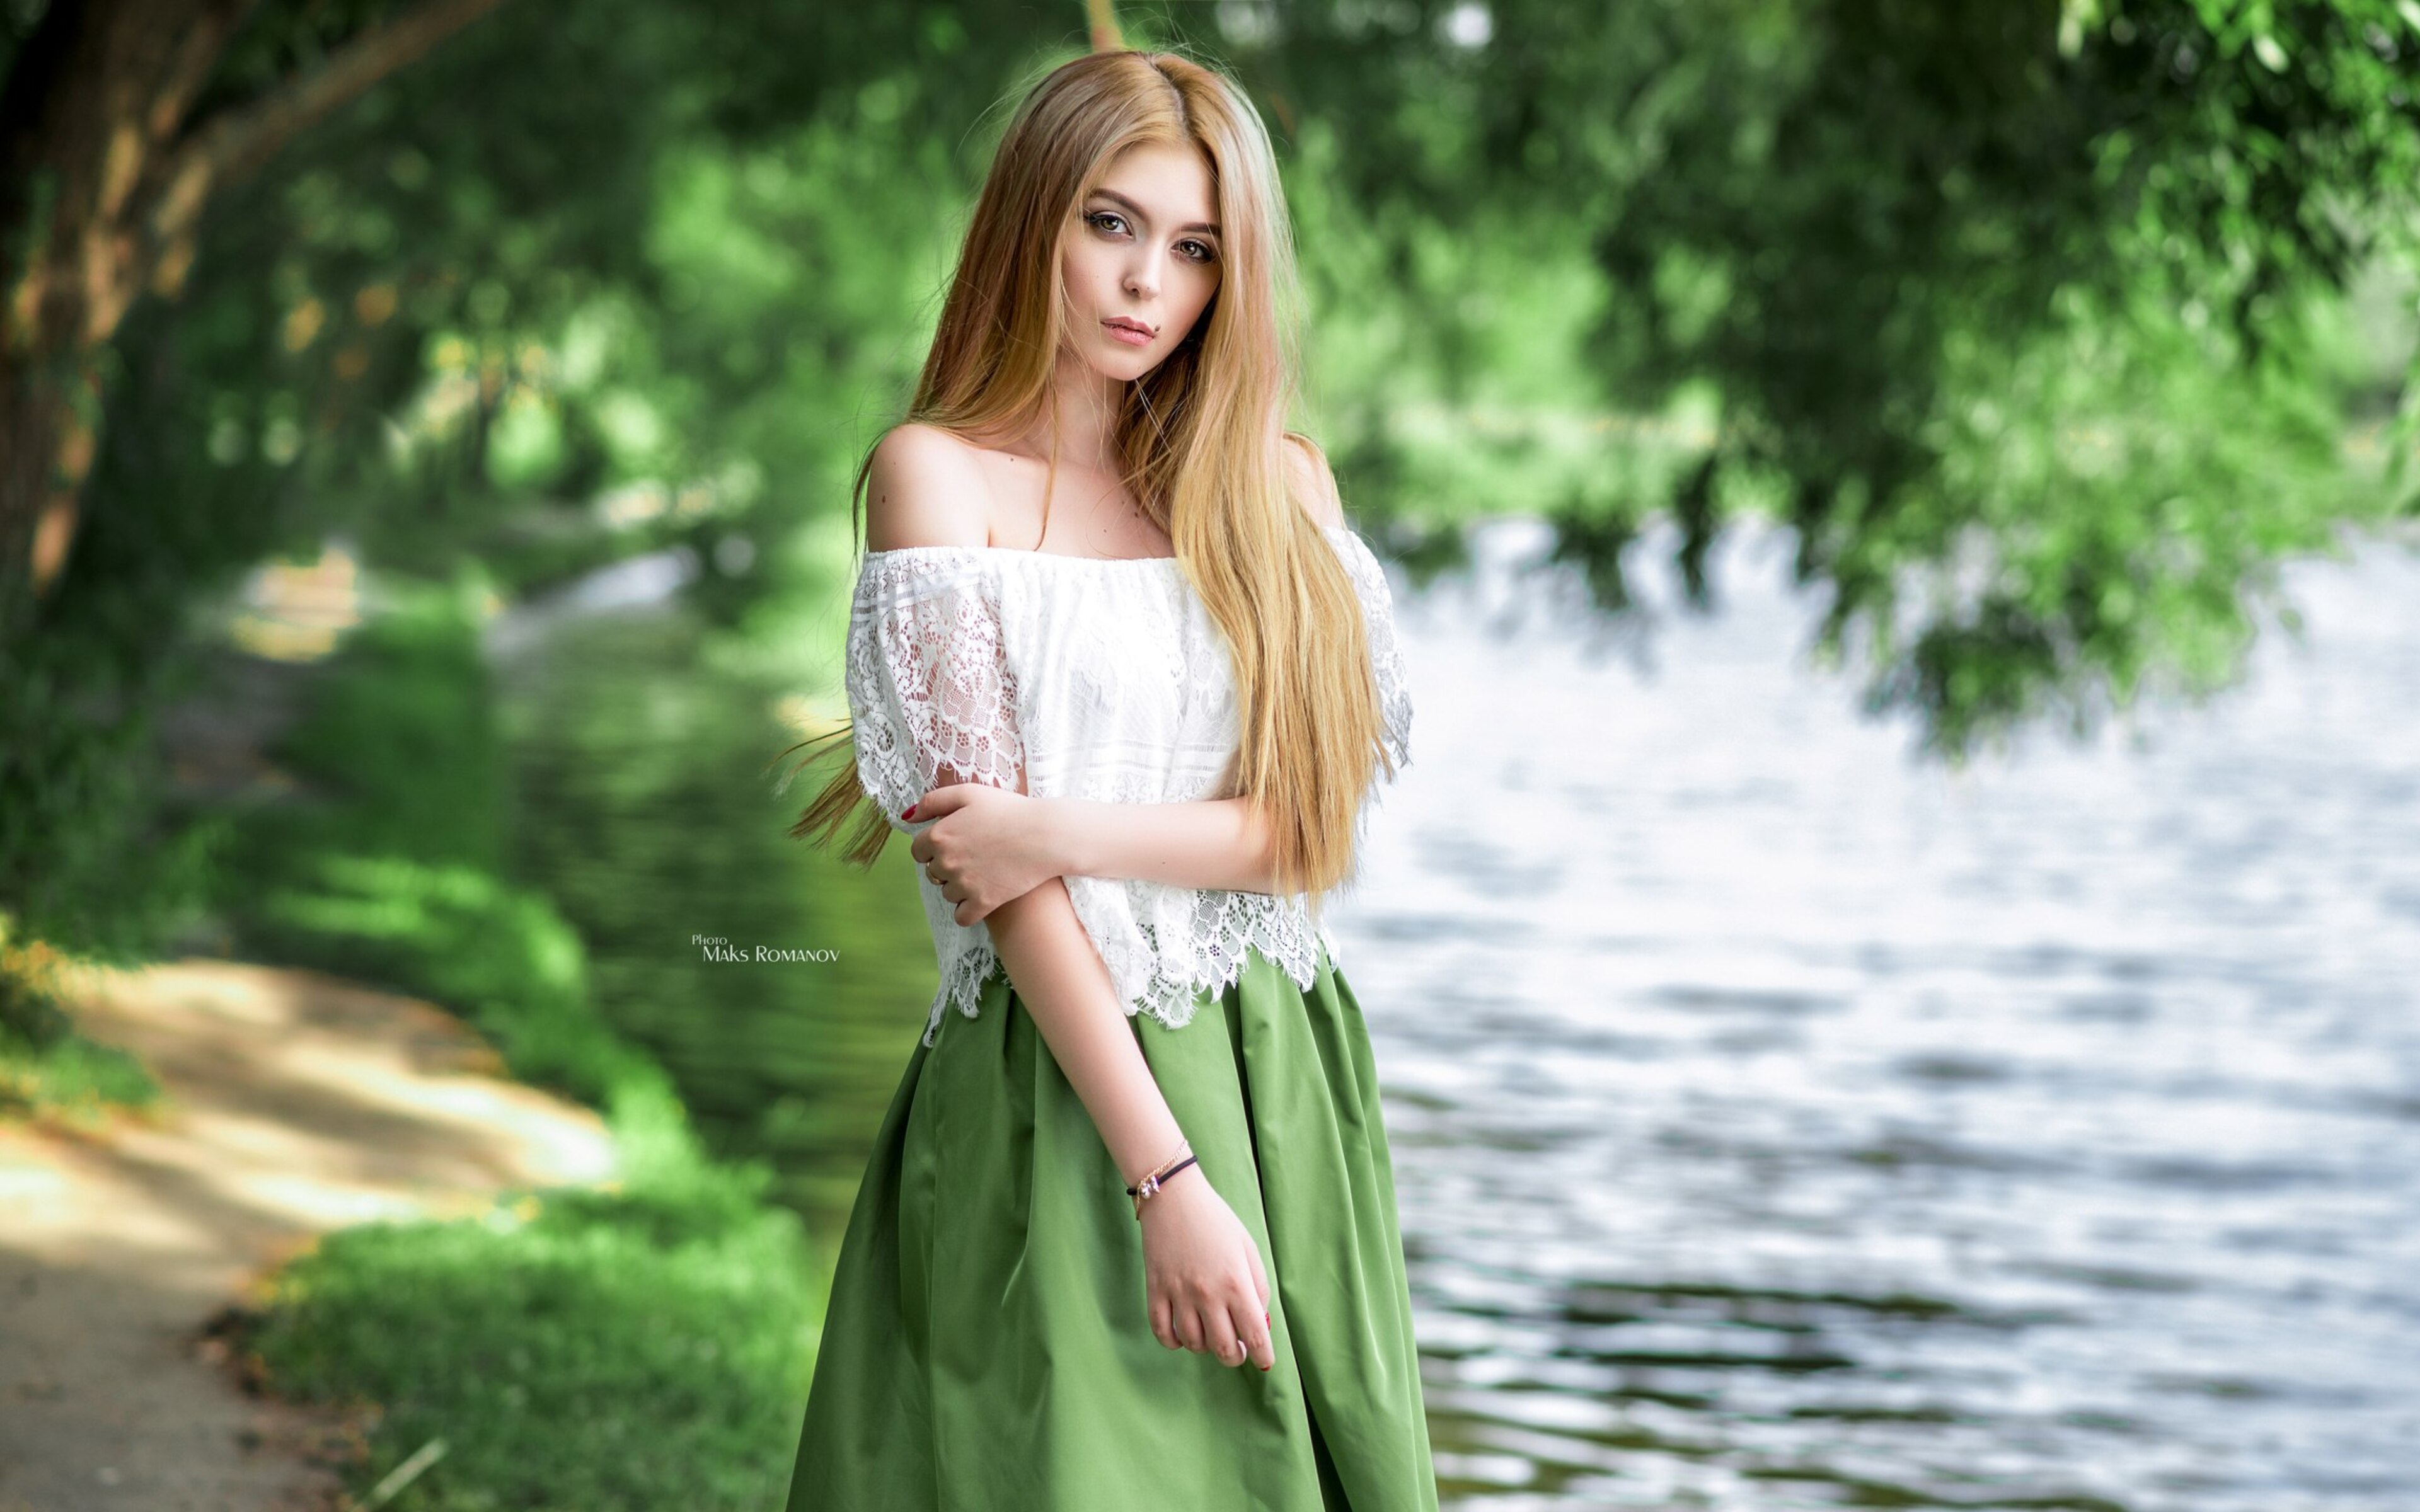 Молодые красивые девушки в платьях. Девушка Maksim Romanov. Красивые платья на природе.